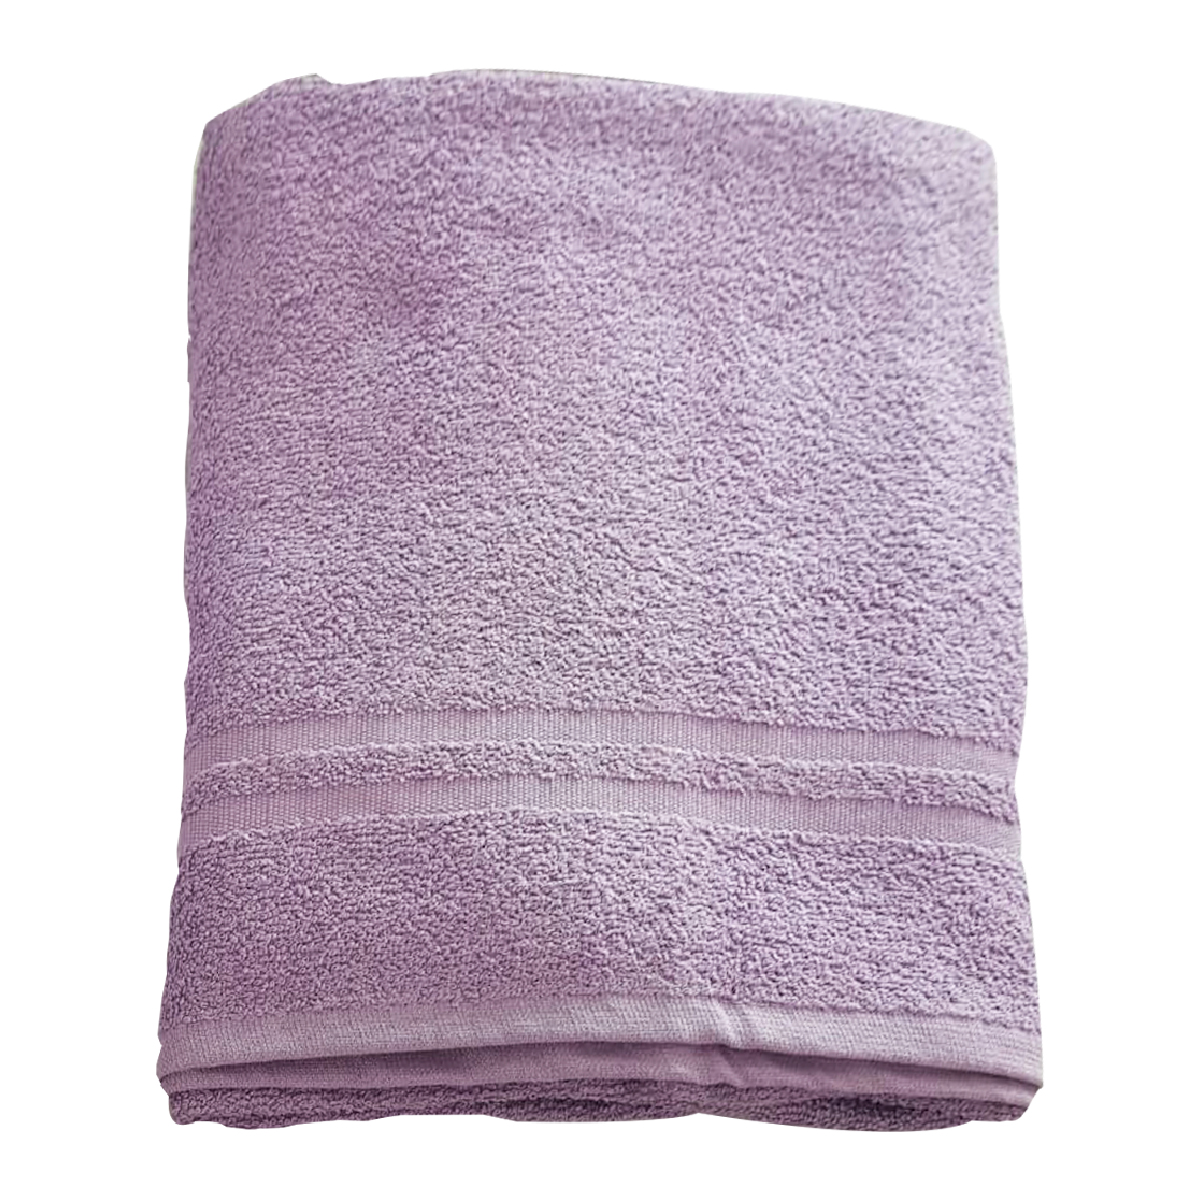 Zenith Towel Large size 70X140CM, 3324 